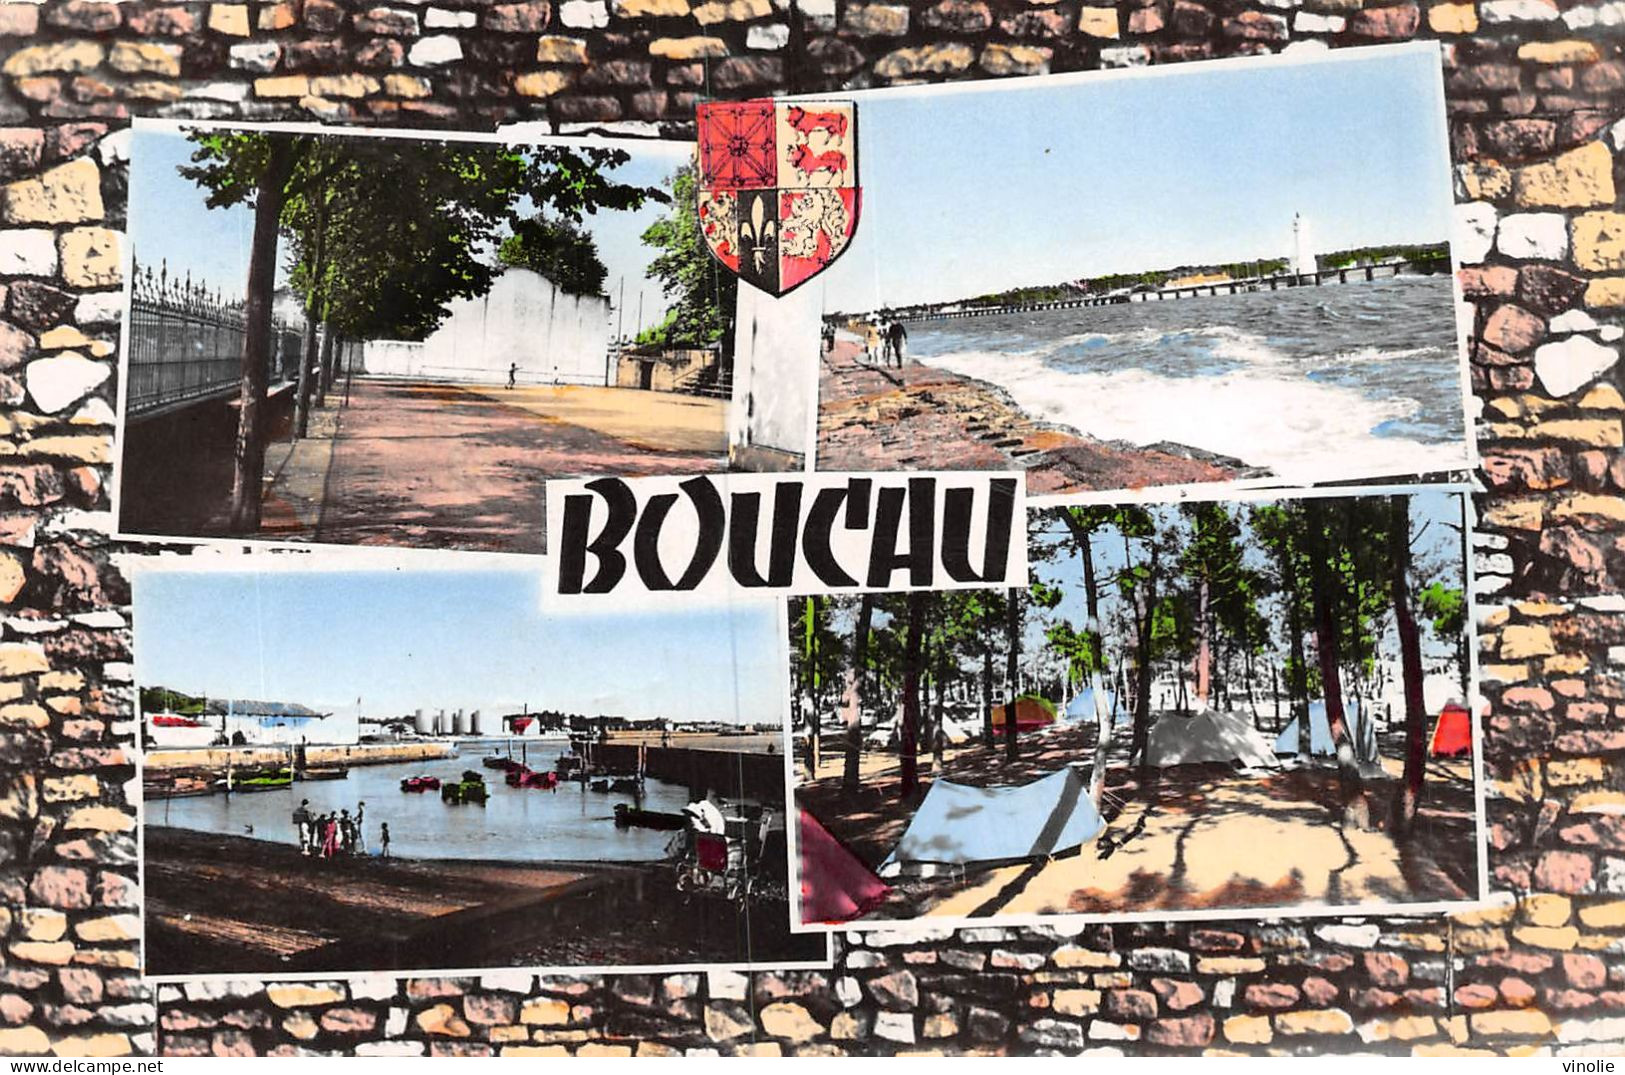 23-JK-272 : CAMPING BOUCAU - Boucau